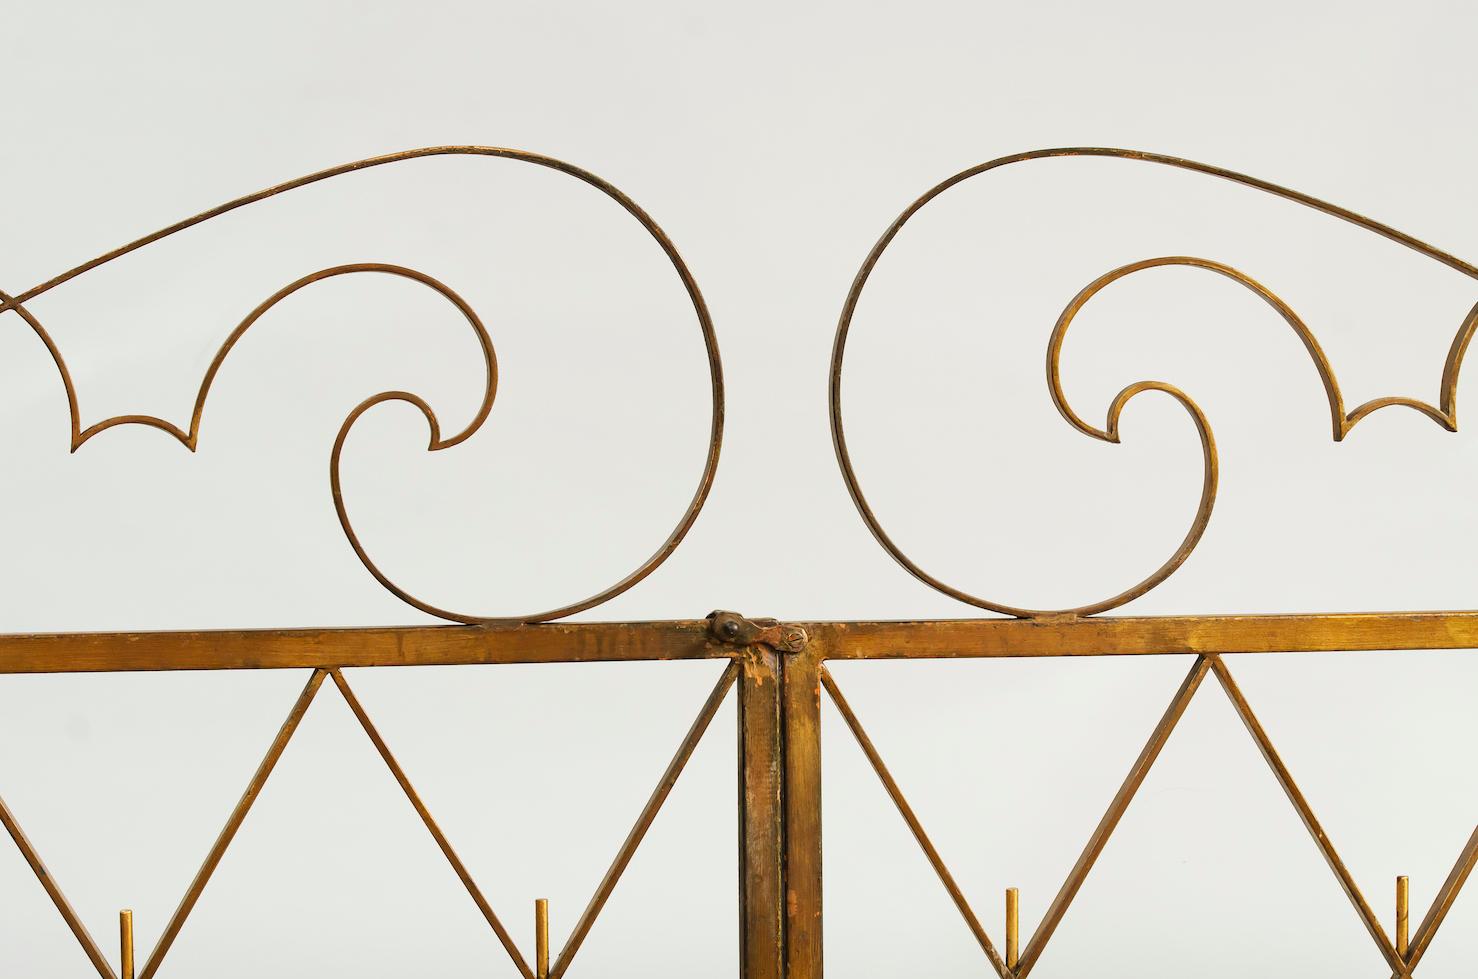 Paire de grilles Art déco en fer doré France 1940s
Mesures : L. 2 x 102 cm, total 204 cm
H. 125 cm (partie la plus haute).